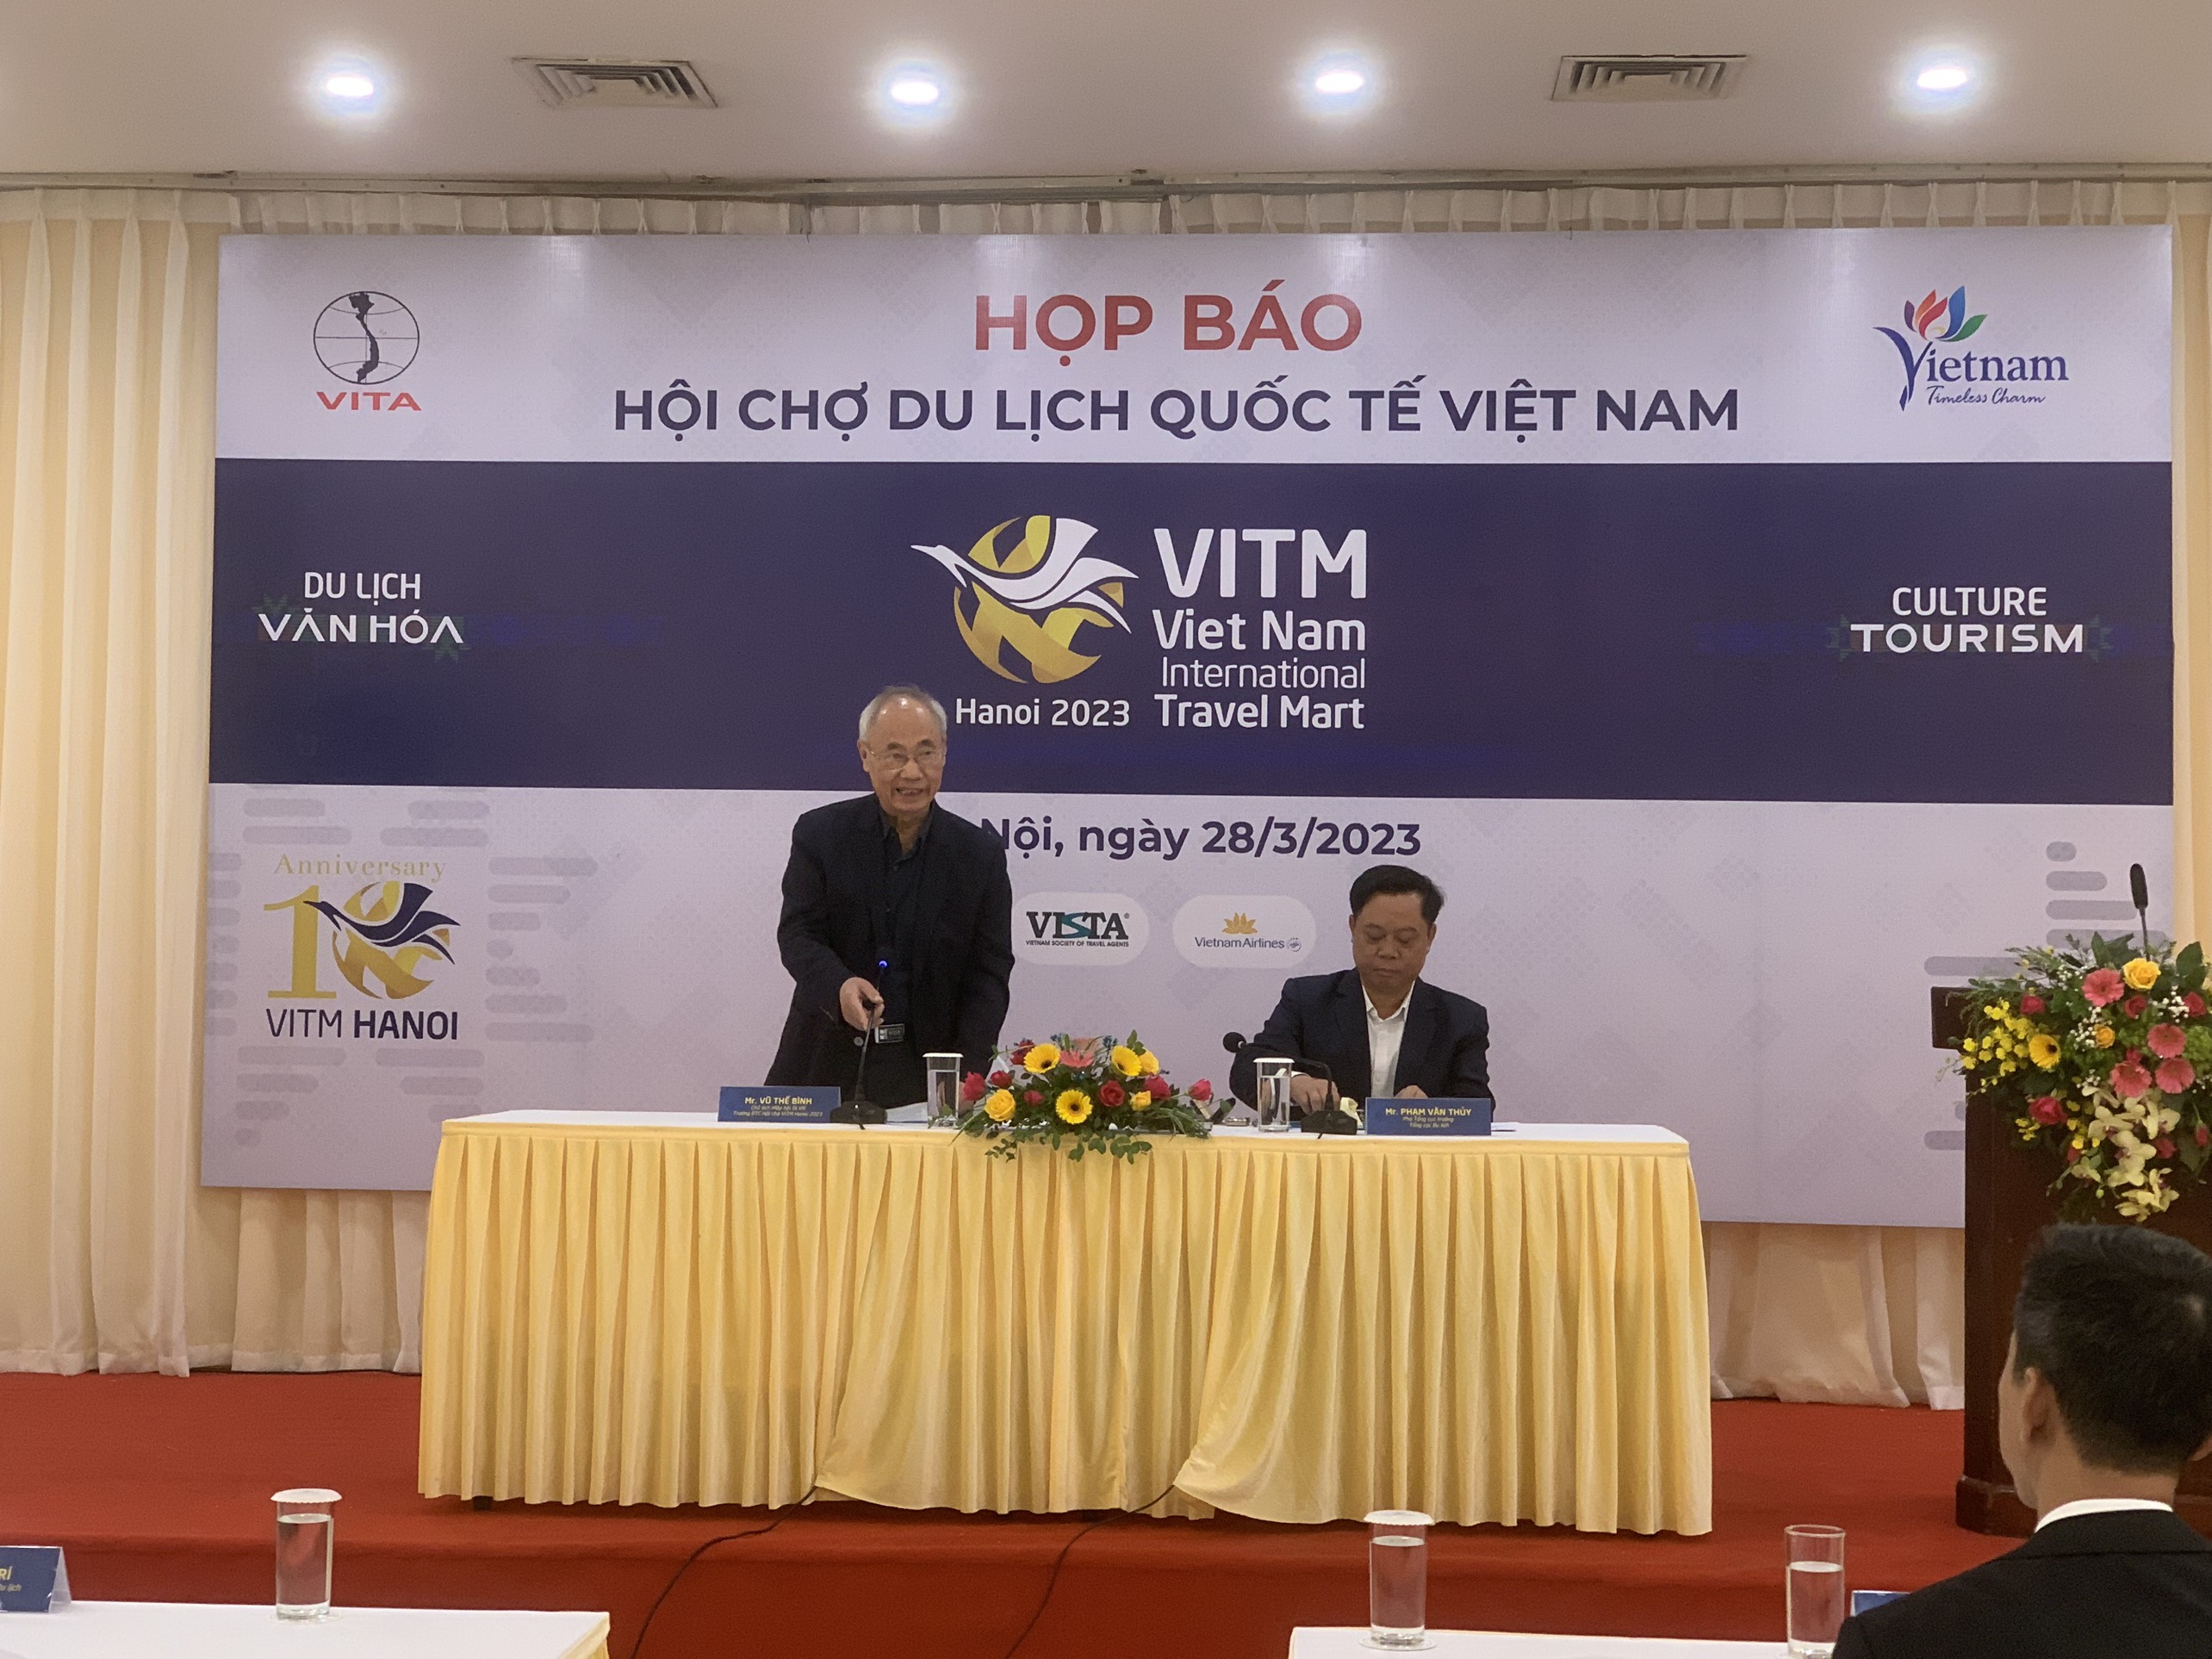 Ông Vũ Thế Bình, Chủ tịch Hiệp hội Du lịch Việt Nam phát biểu tại họp báo về VITM Hà Nội 2023